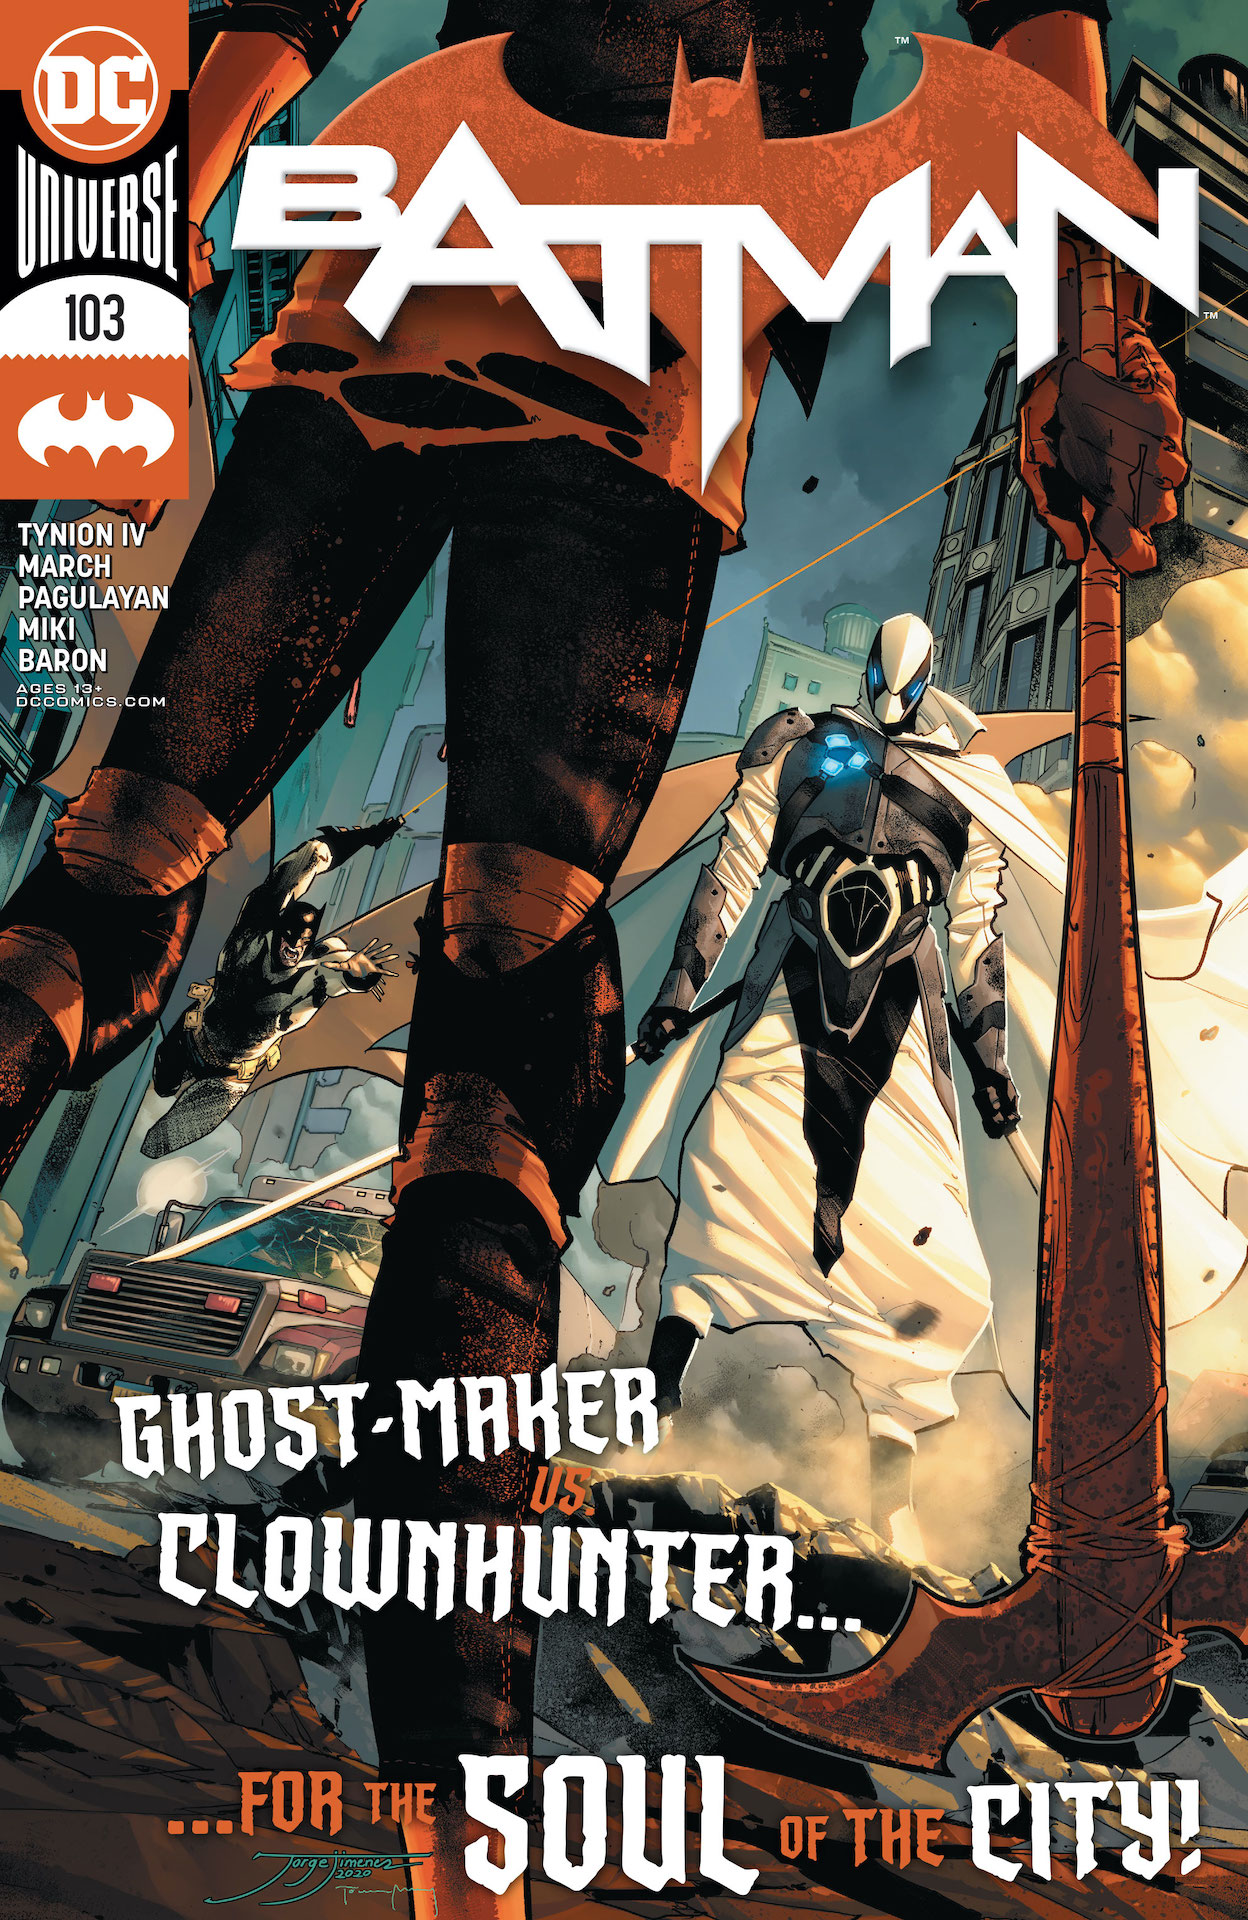 DC Preview: Batman #103